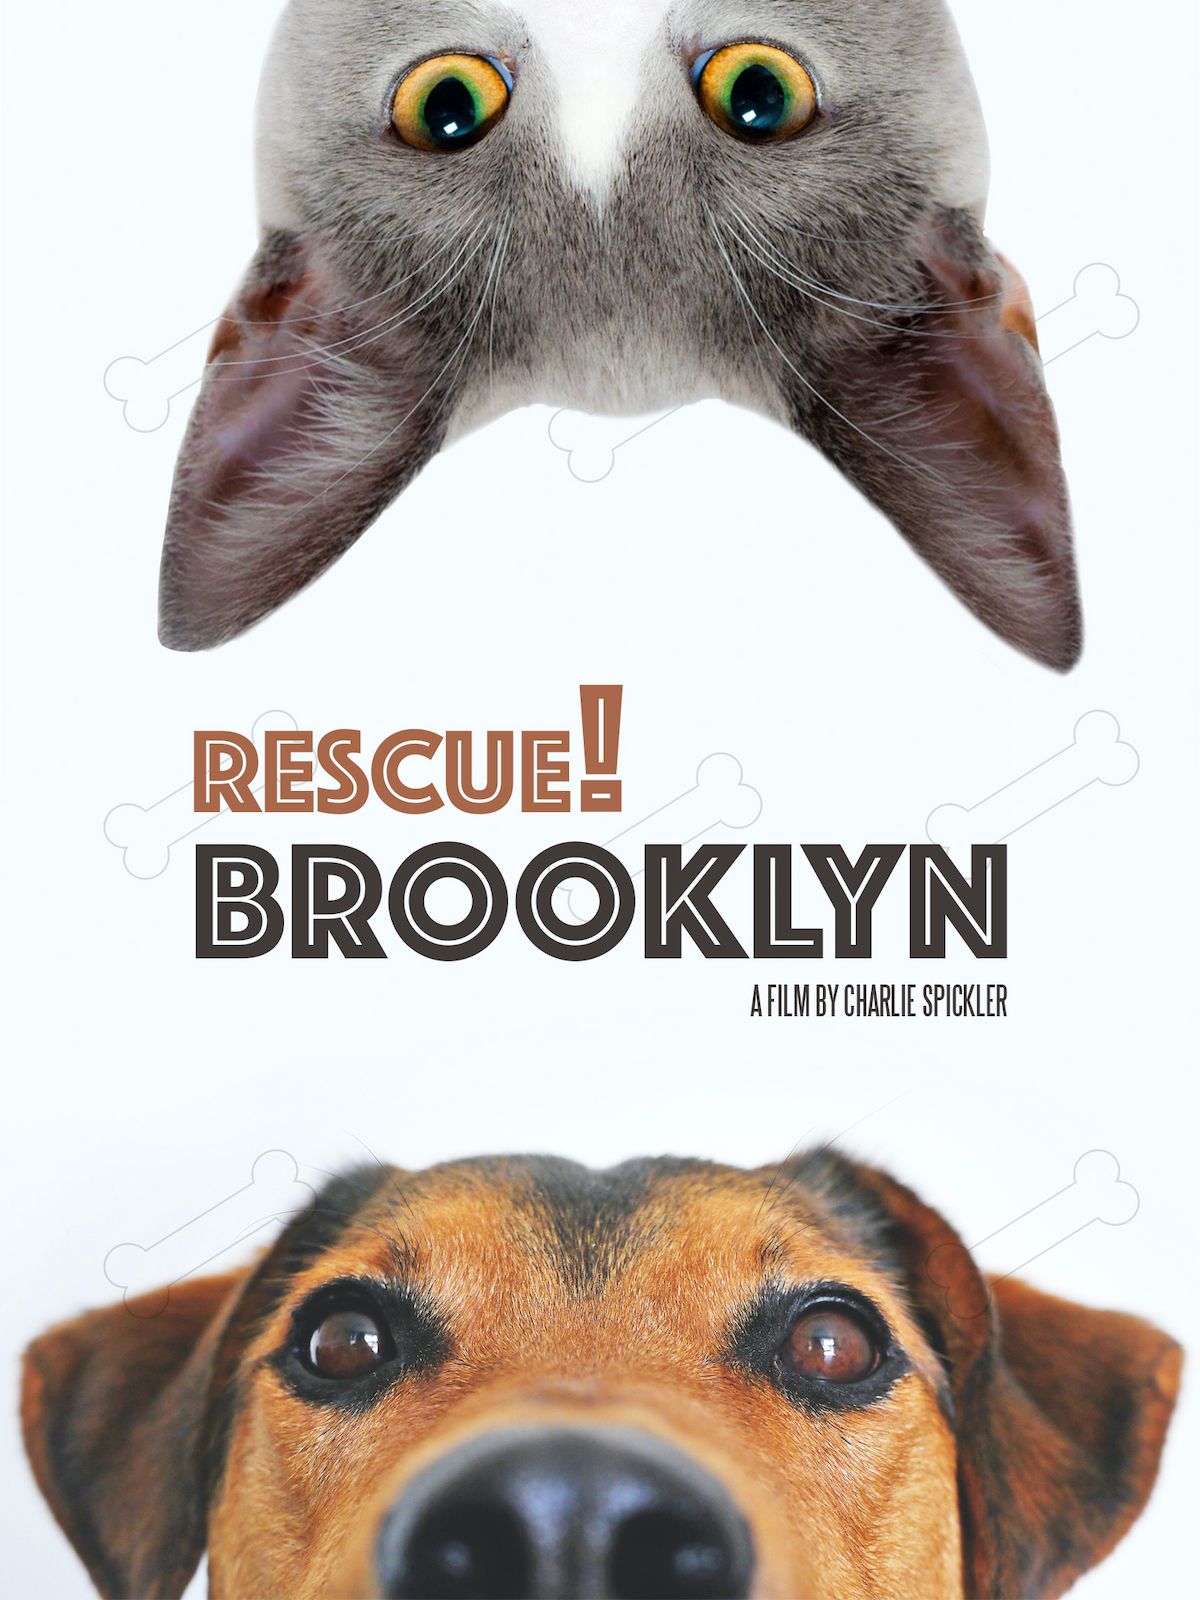 Rescue! Brooklyn